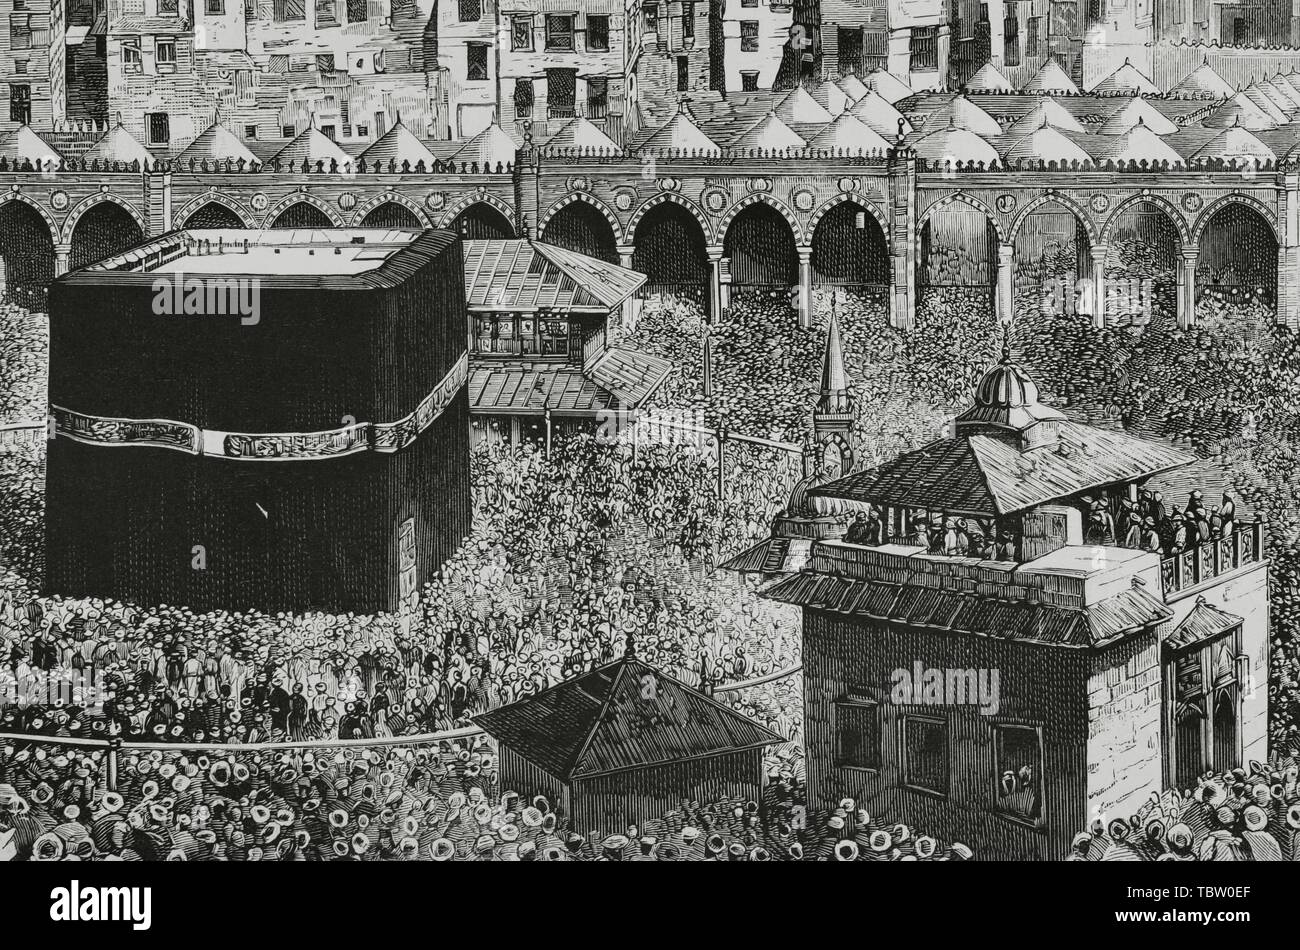 Arabia Saudí. La Meca. Vista del patio central de la Mezquita Masjid al-Haram, donde se encuentra La Kaaba, que alberga la 'piedra negra'. Grabado de La Ilustración Española y Americana, 15 de abril de 1882. Detalle. Stock Photo